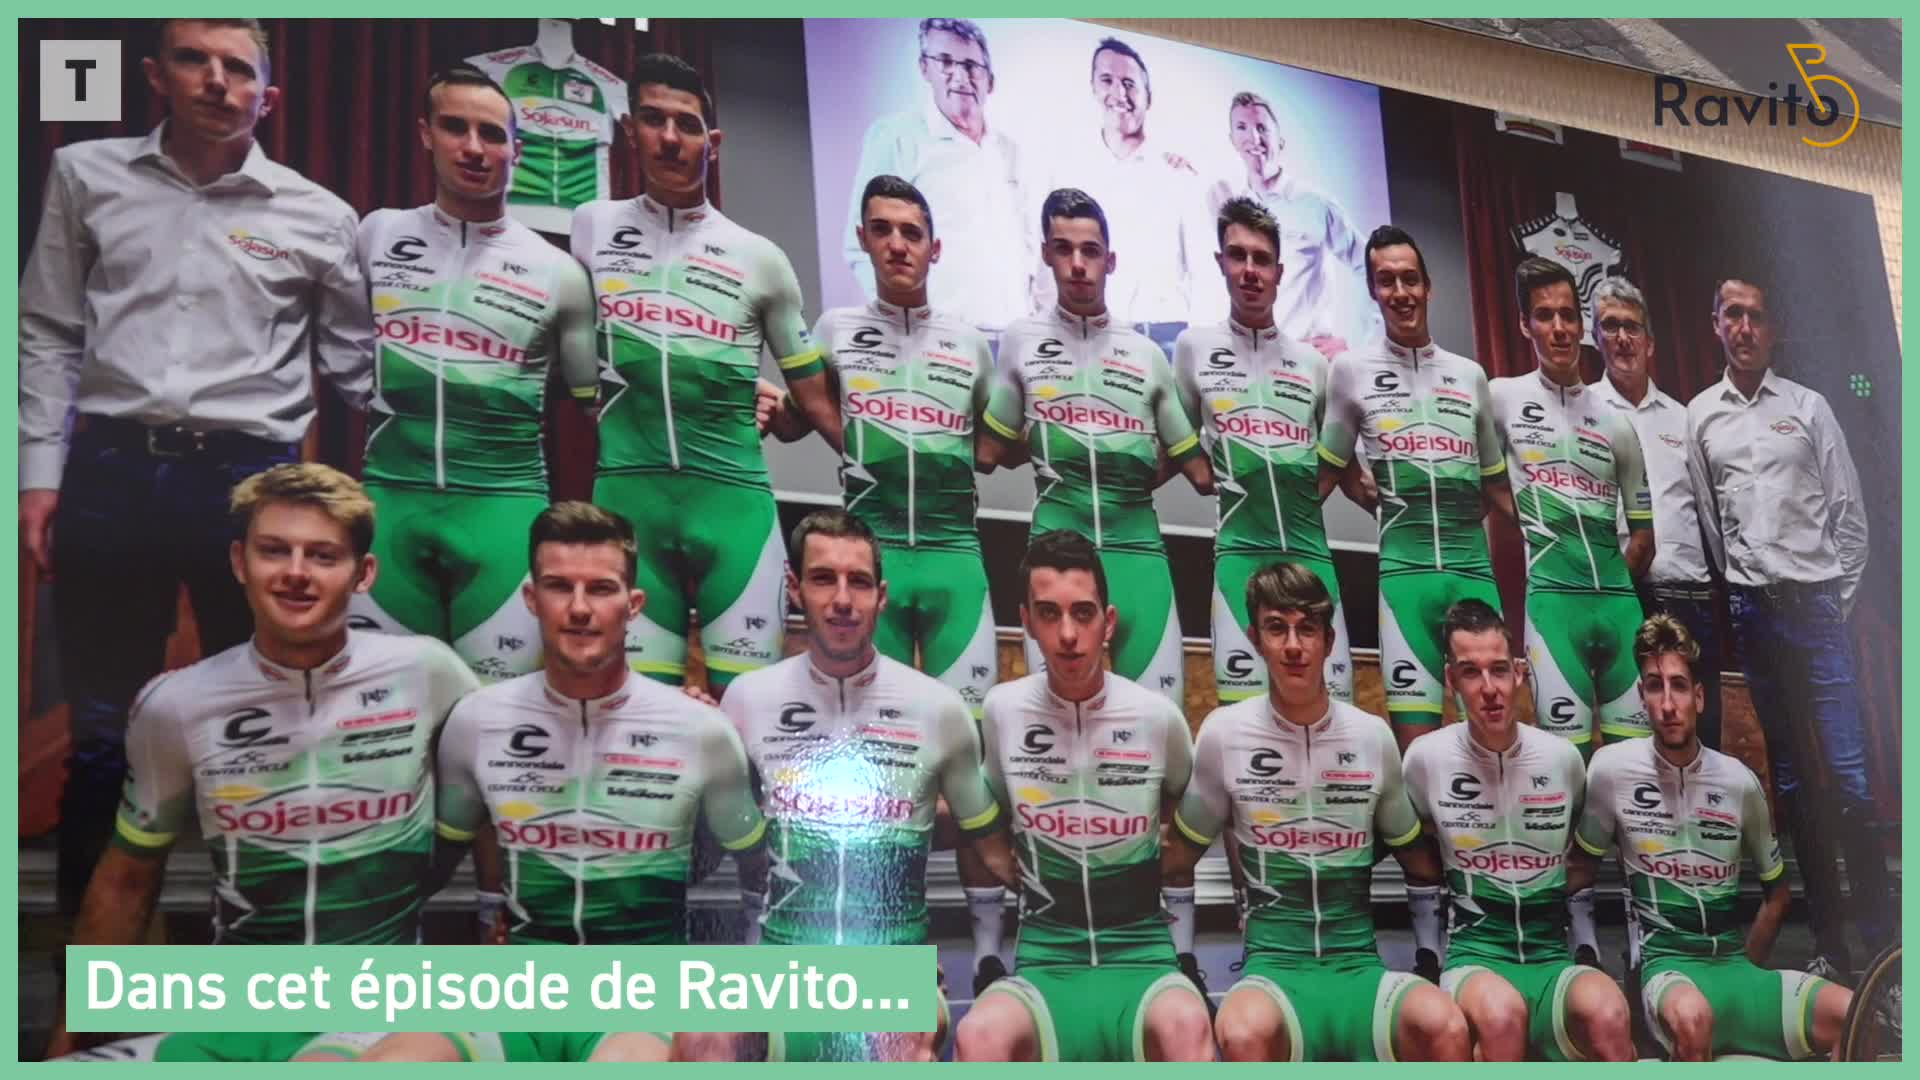 Ravito #83 : l'équipe Sojasun s'arrête, le cyclisme amateur en danger [Vidéo]